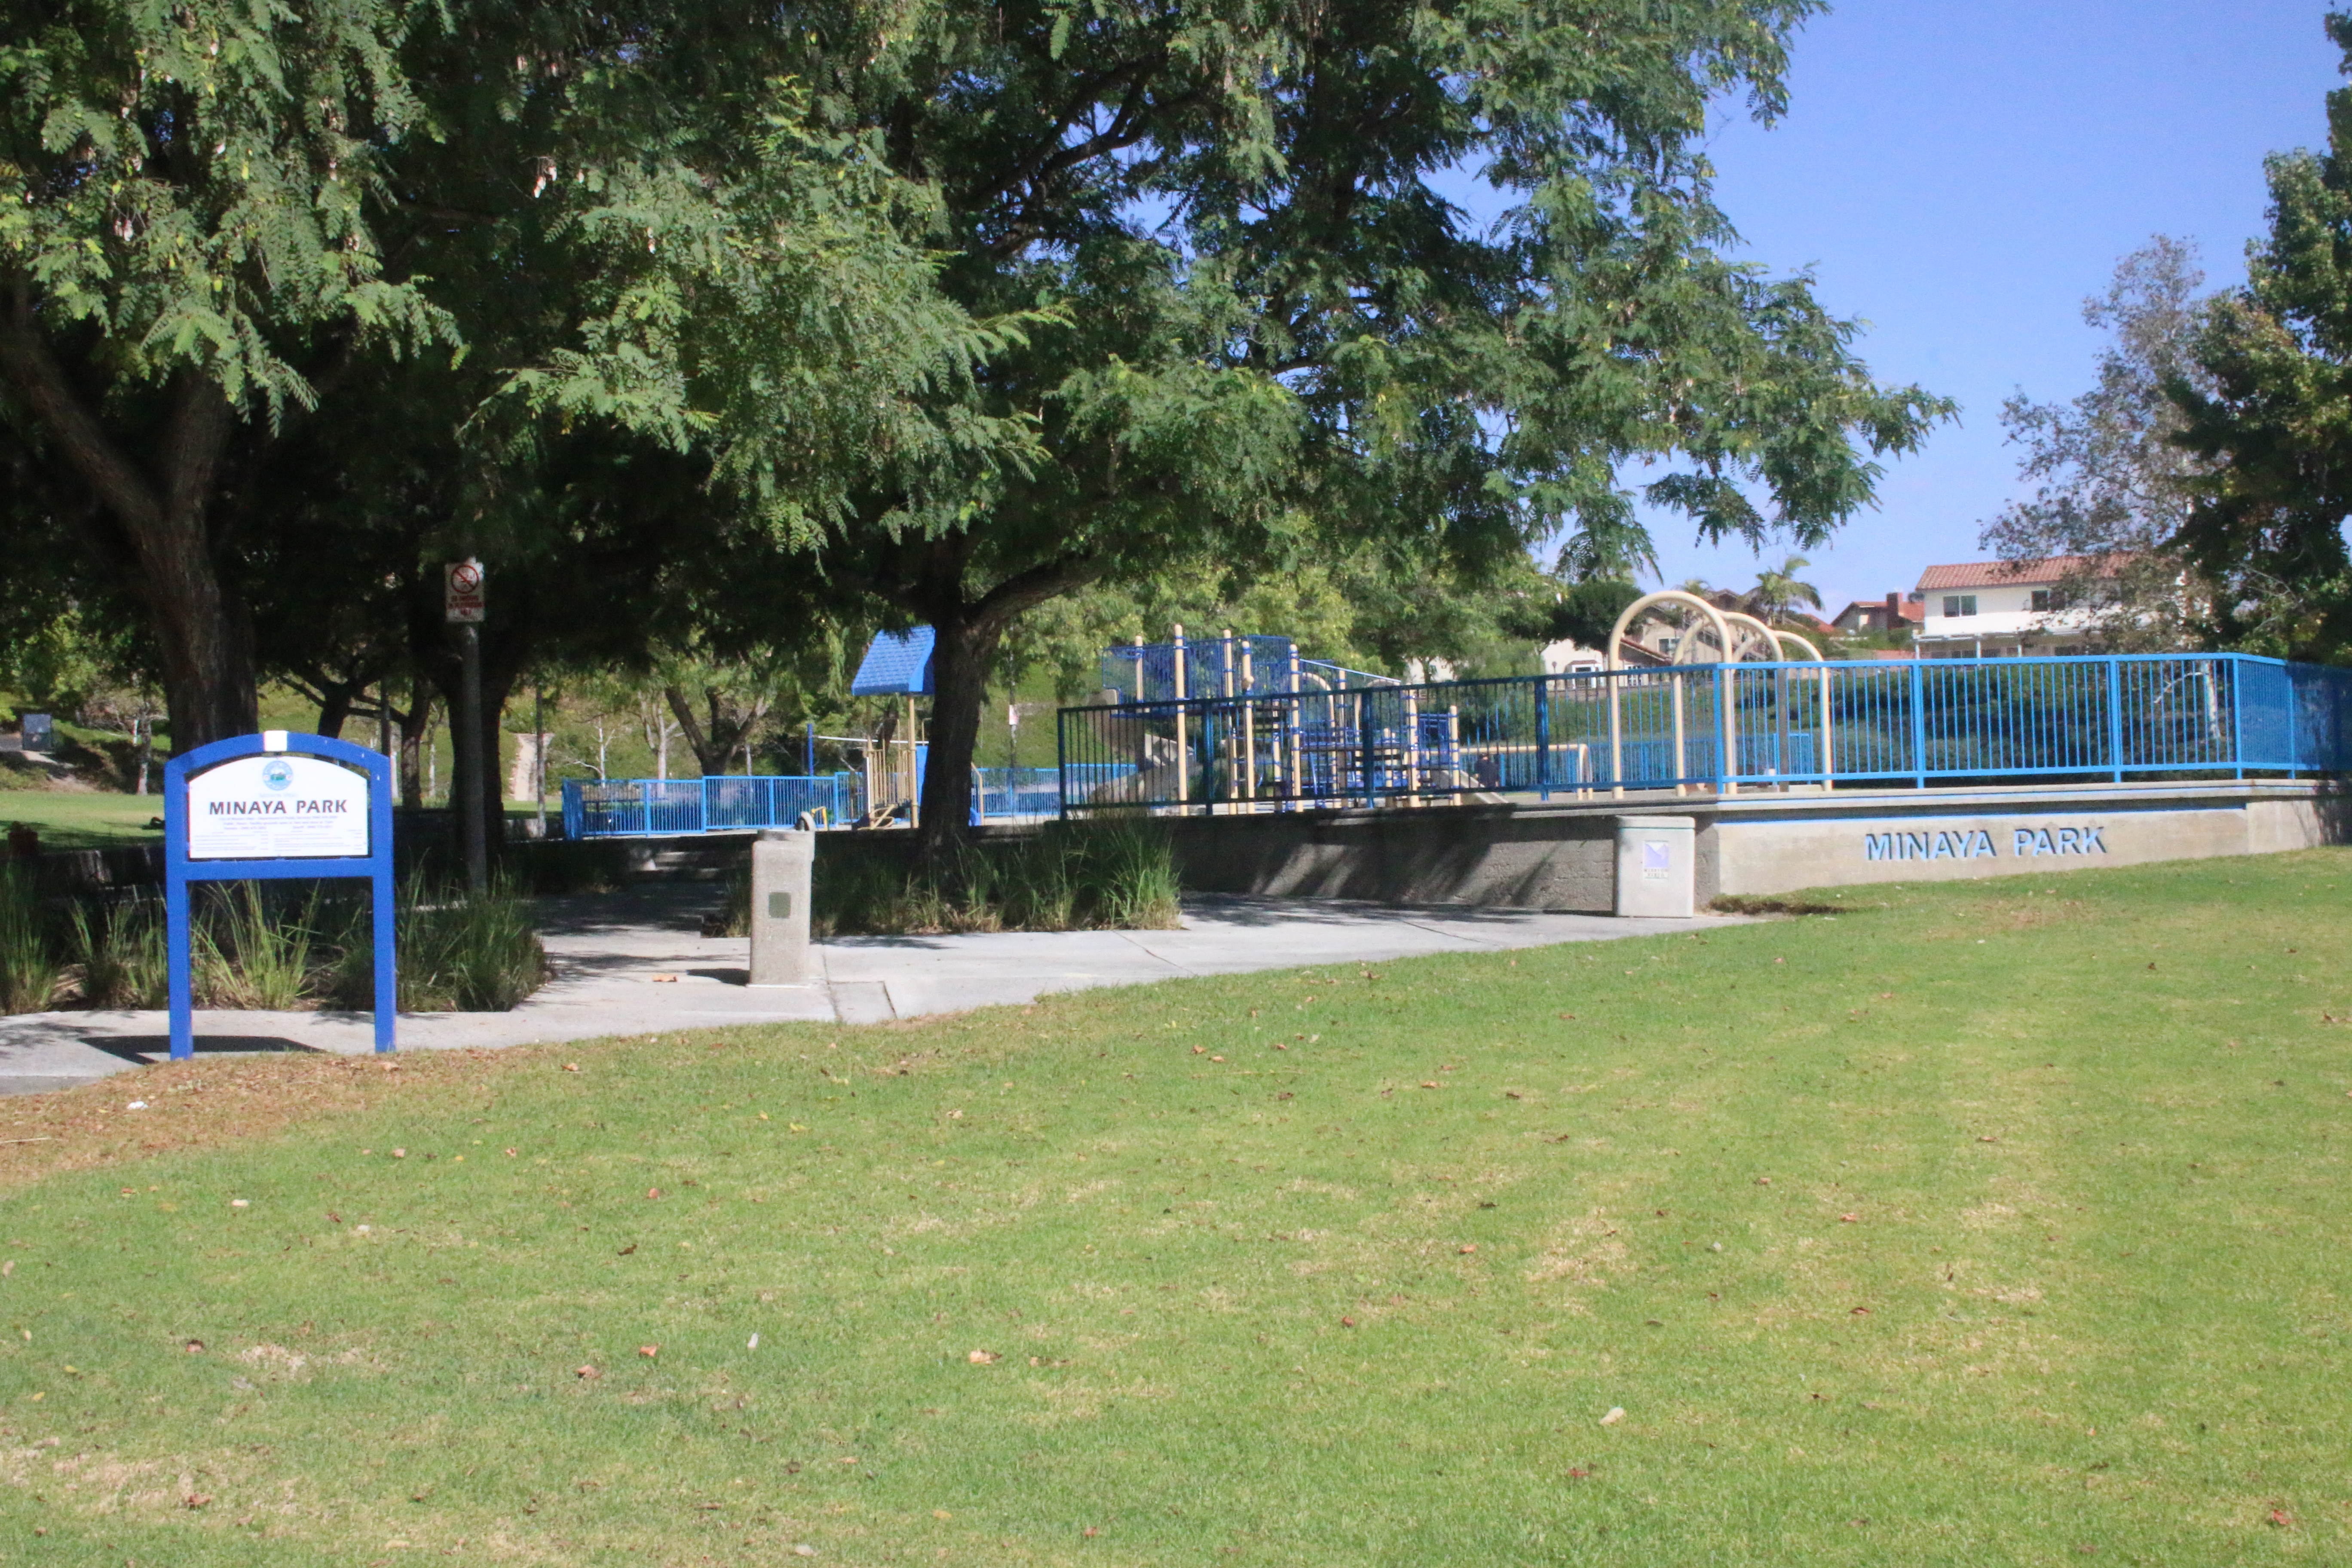 Minaya Park and Playground